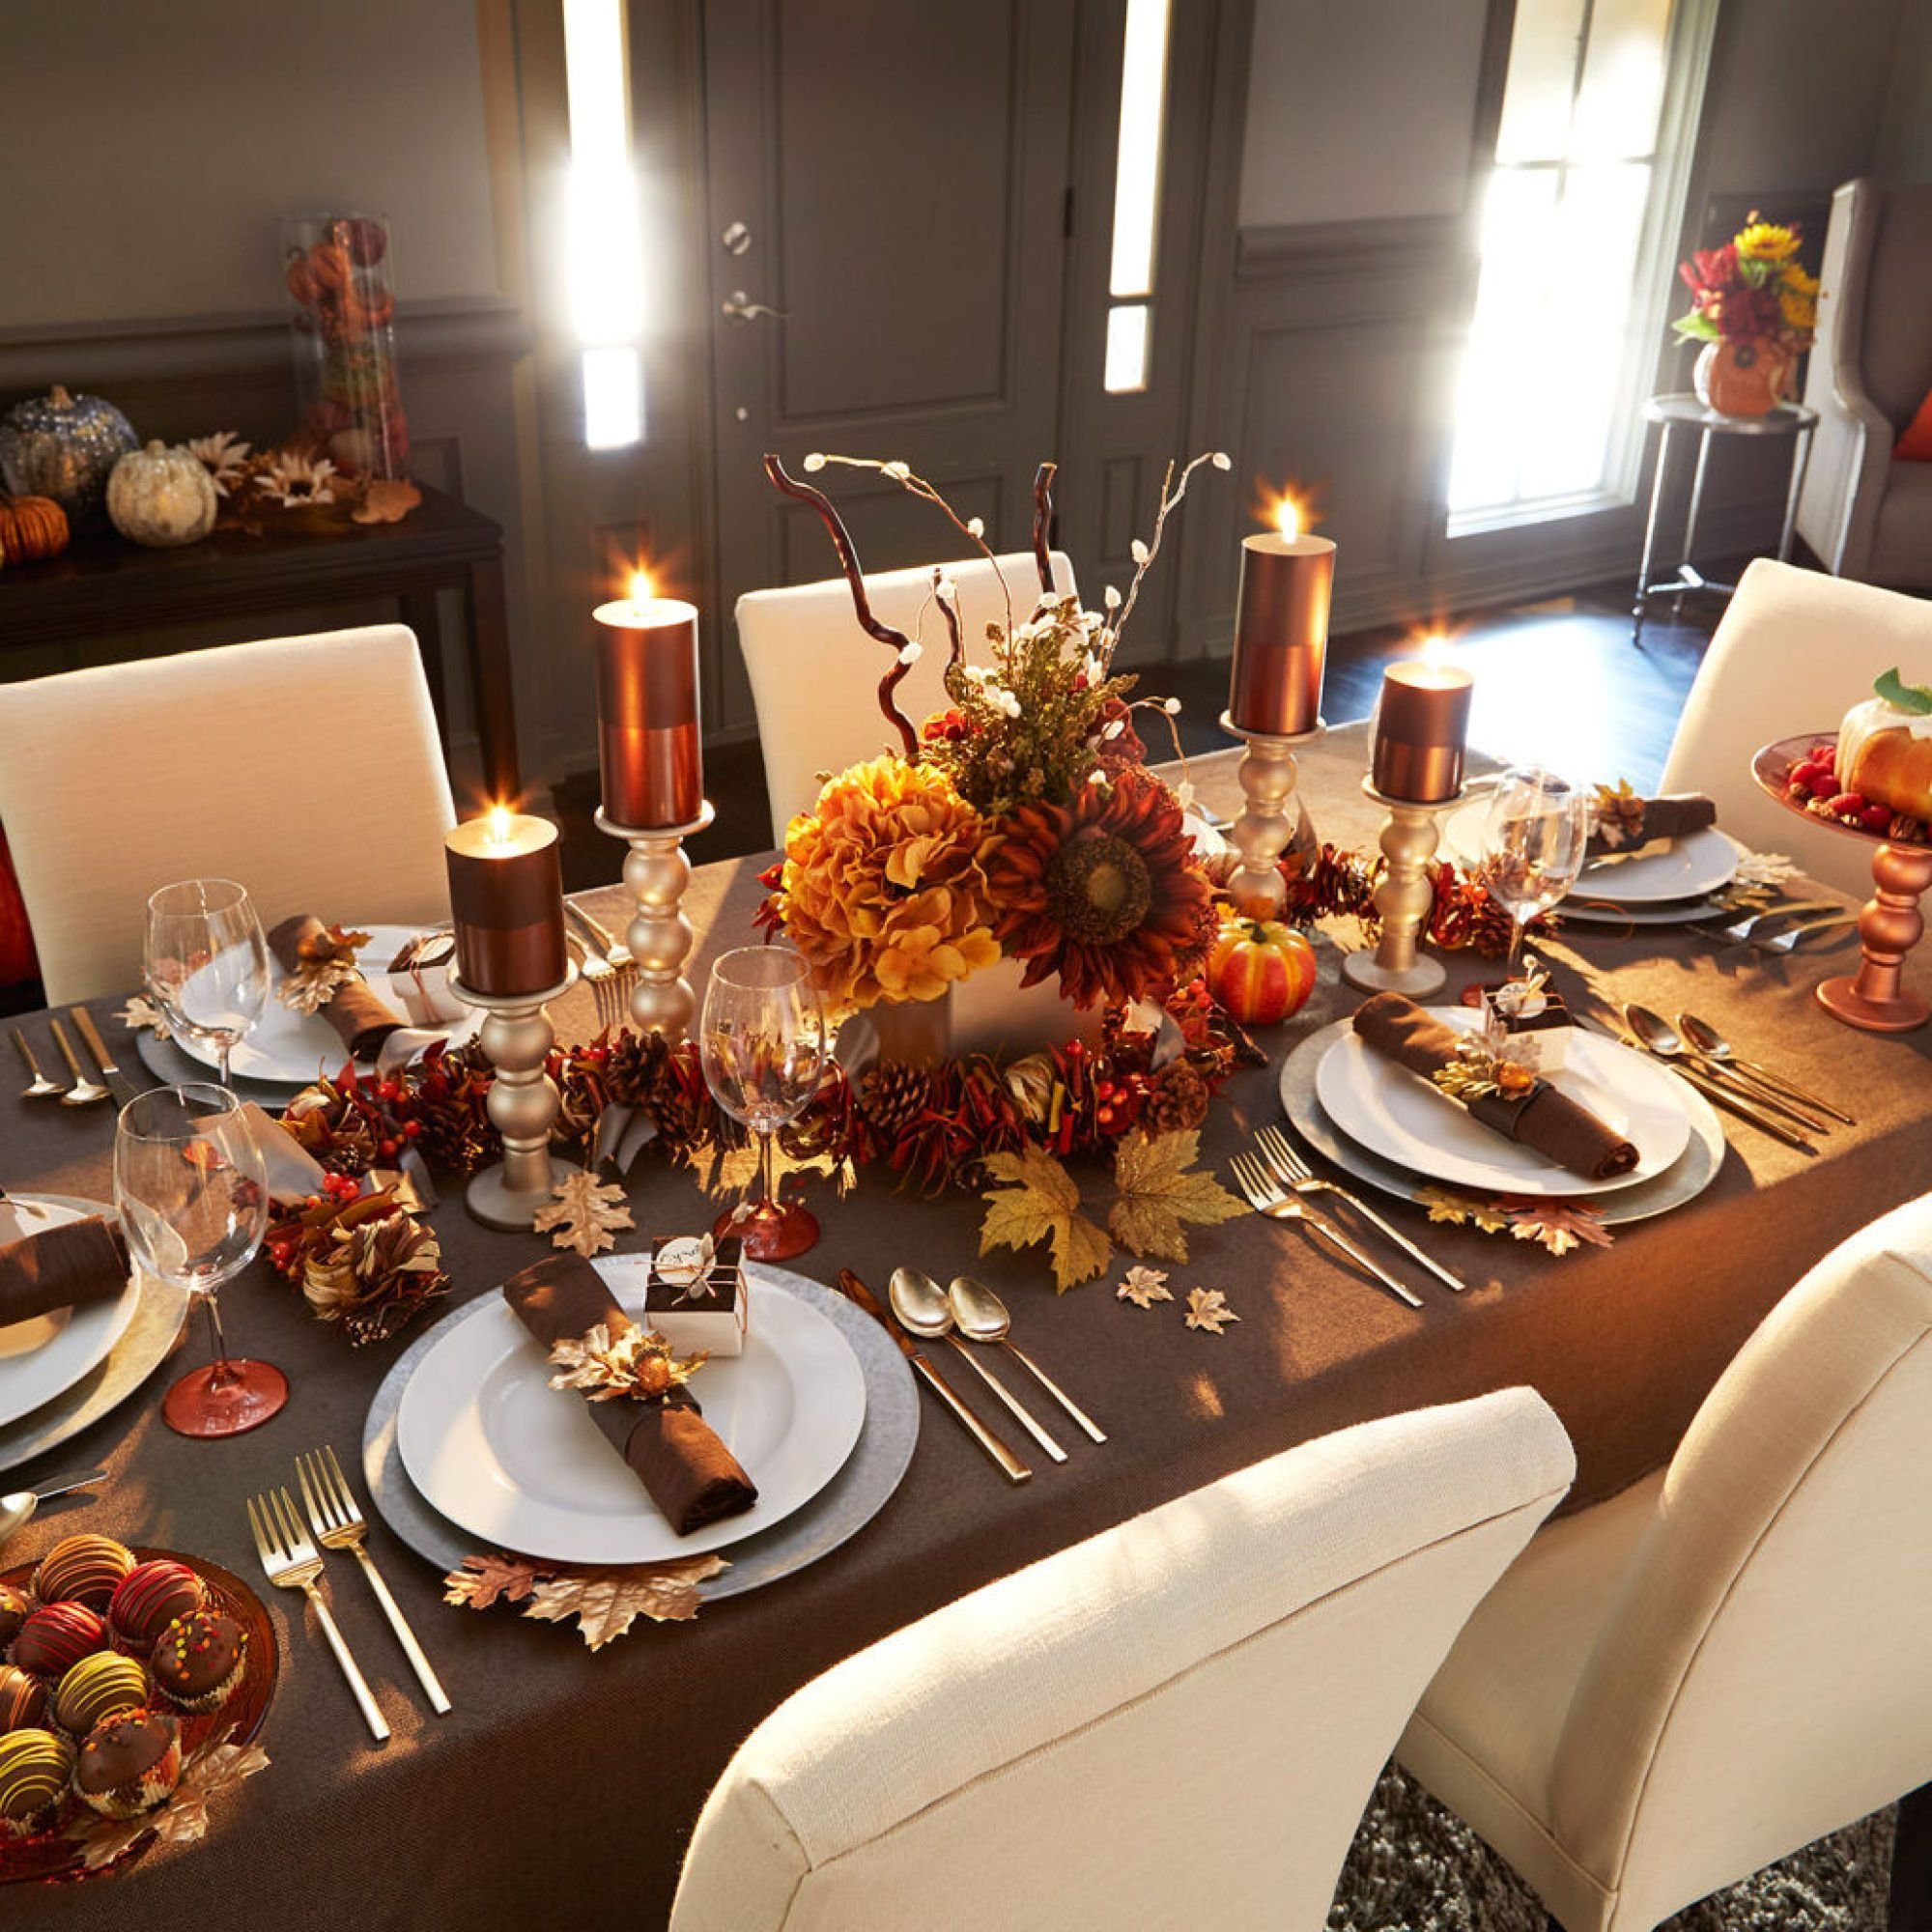 Ужин осень. Осенняя сервировка стола. Красивая сервировка стола на ужин. Красиво накрытый стол. Сервировка стола в стиле осень.